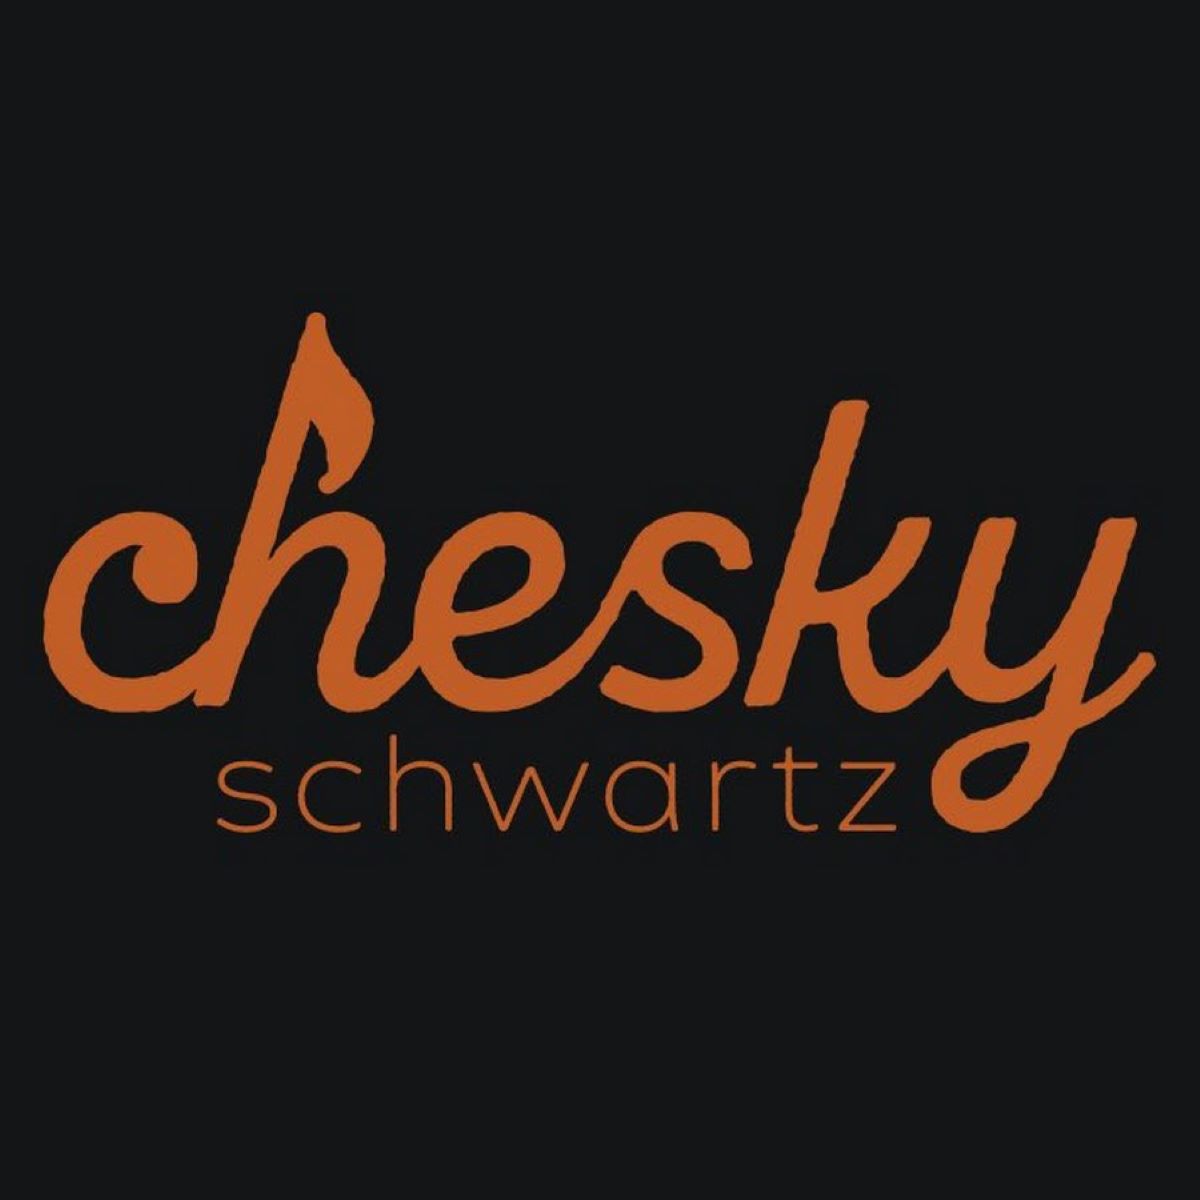 Kalmey Schwartz & Chesky Schwartz Production - Oct. 19 '23